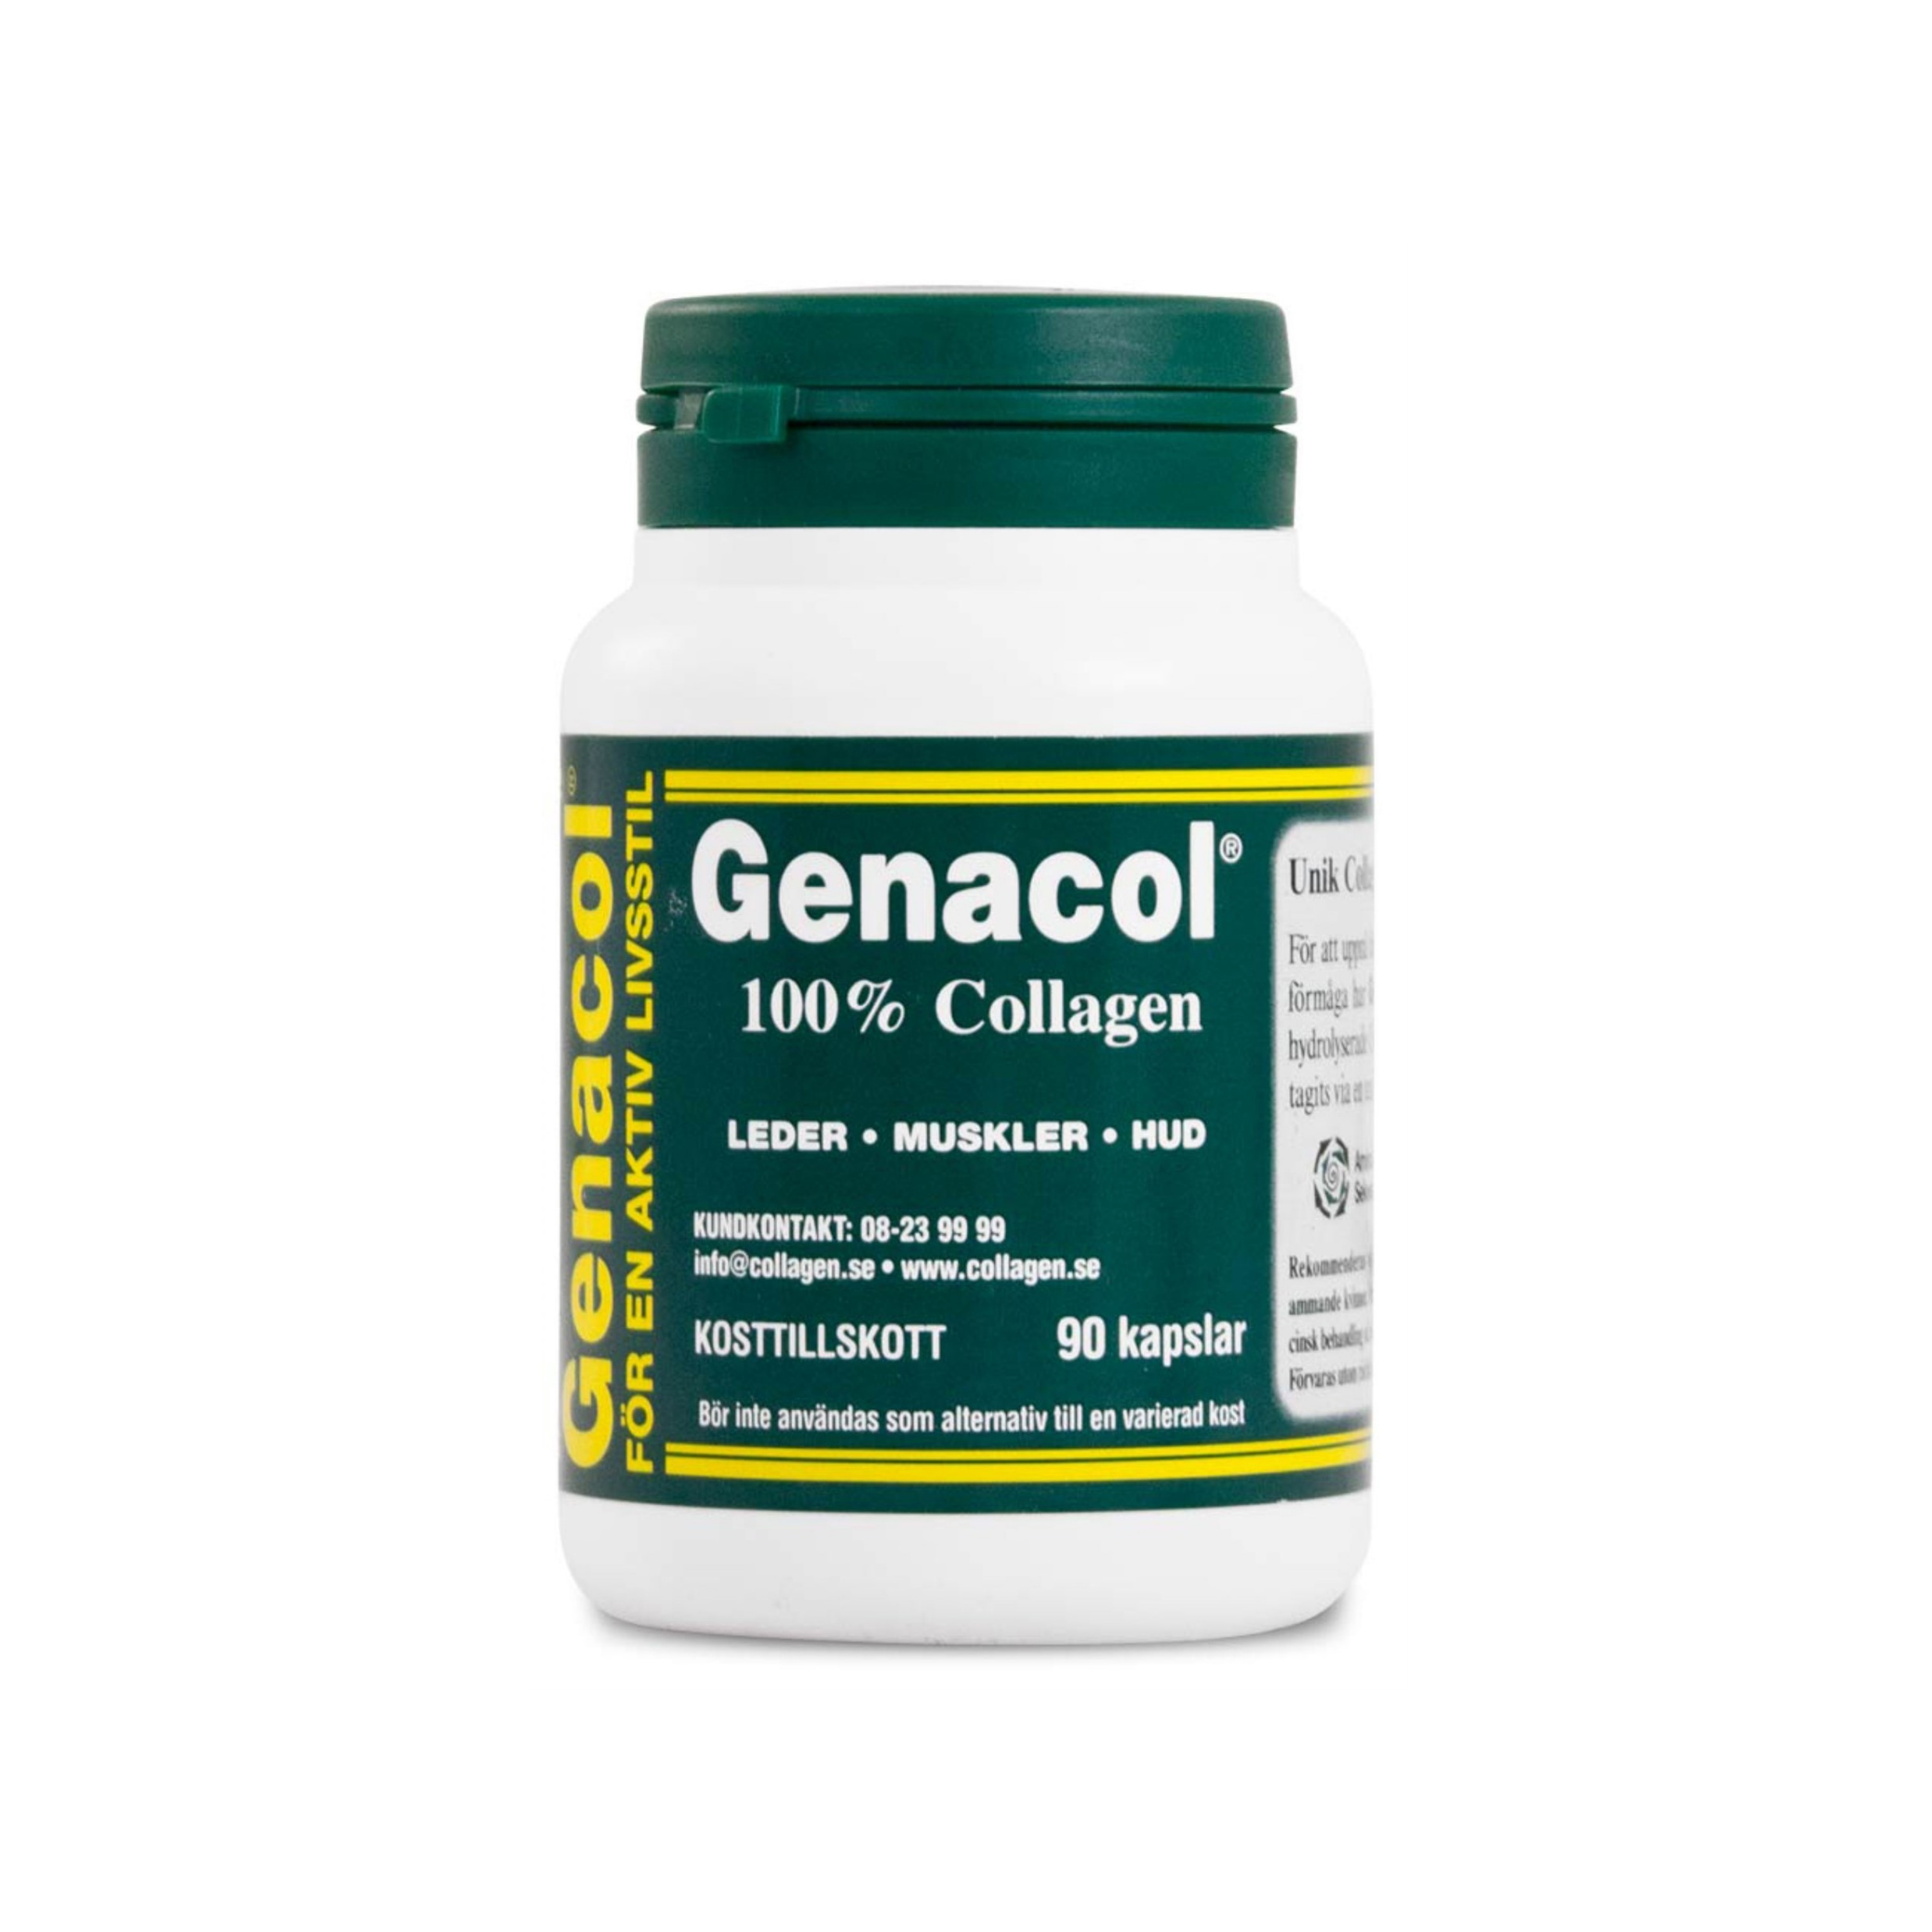 Genacol 100% Collagen 90k